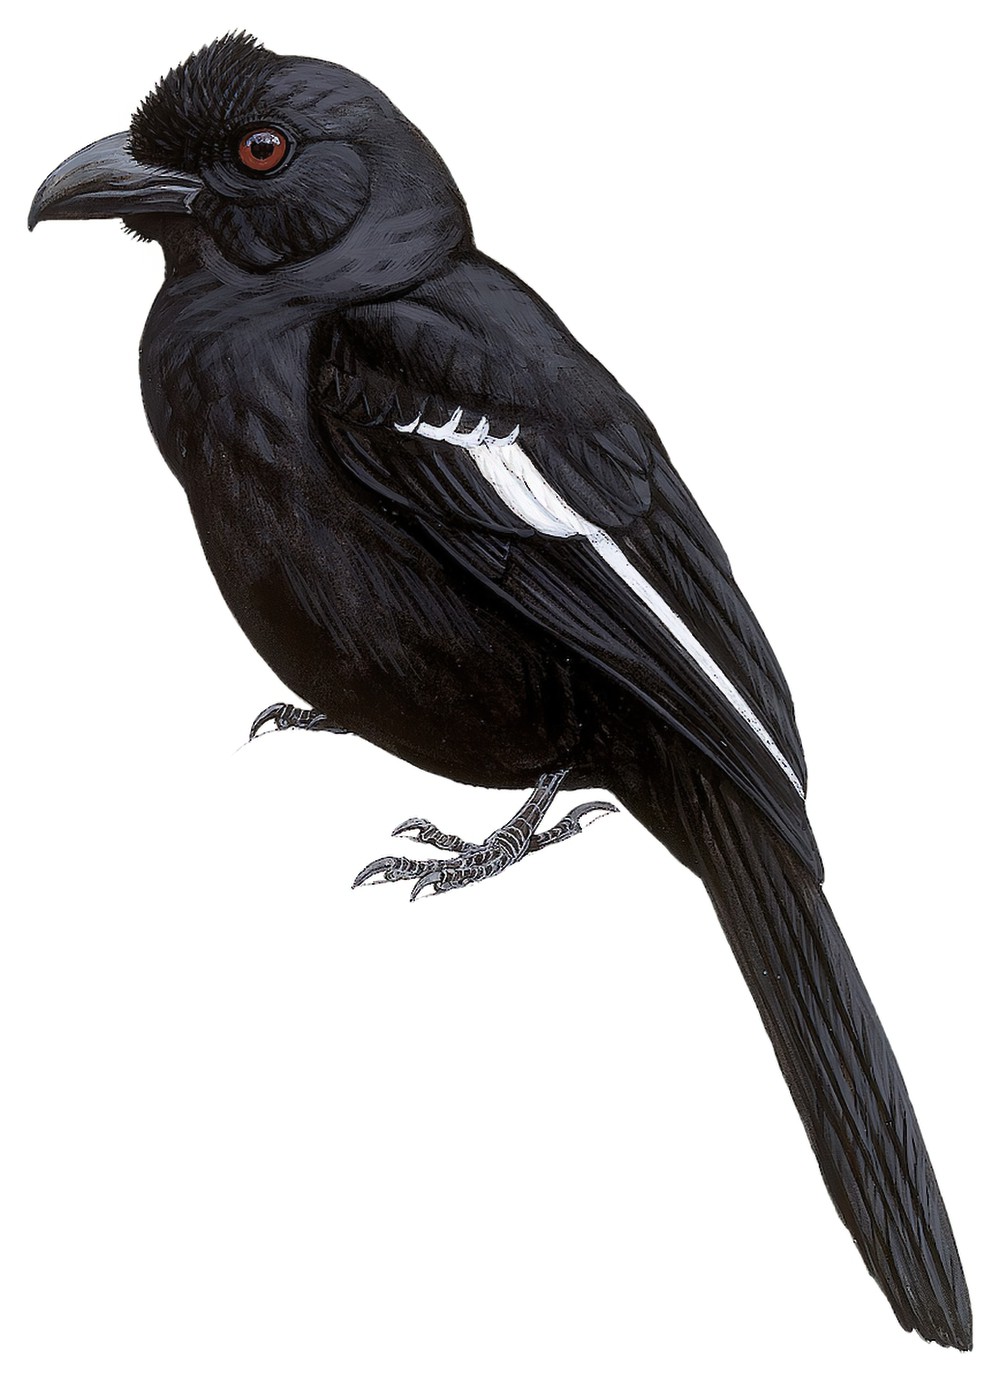 Black Magpie / Platysmurus leucopterus